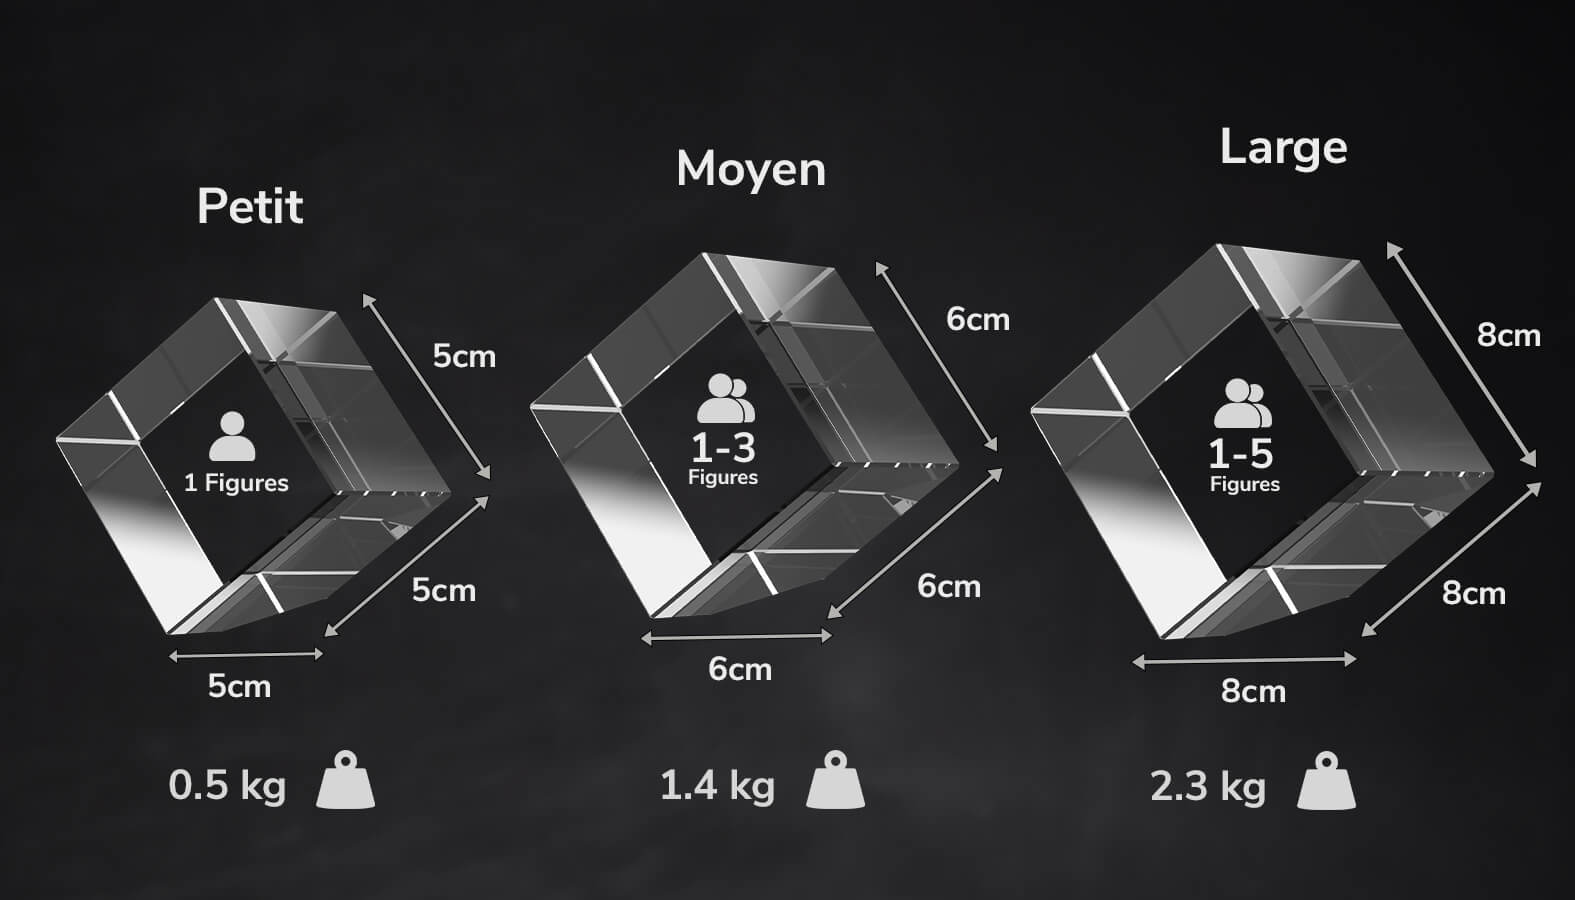 Un guide des tailles des différentes tailles de cristal photo 3D disponibles